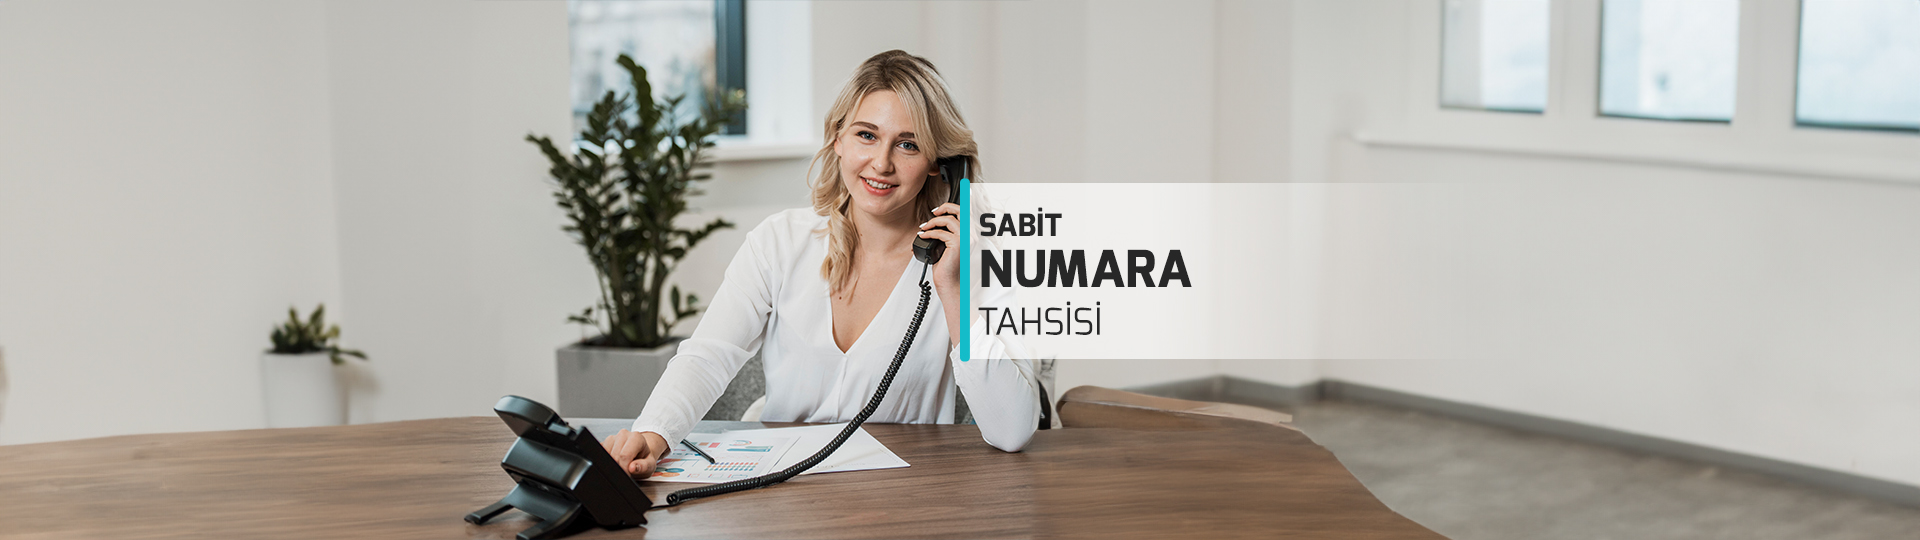 Sabit Numara Tahsisi